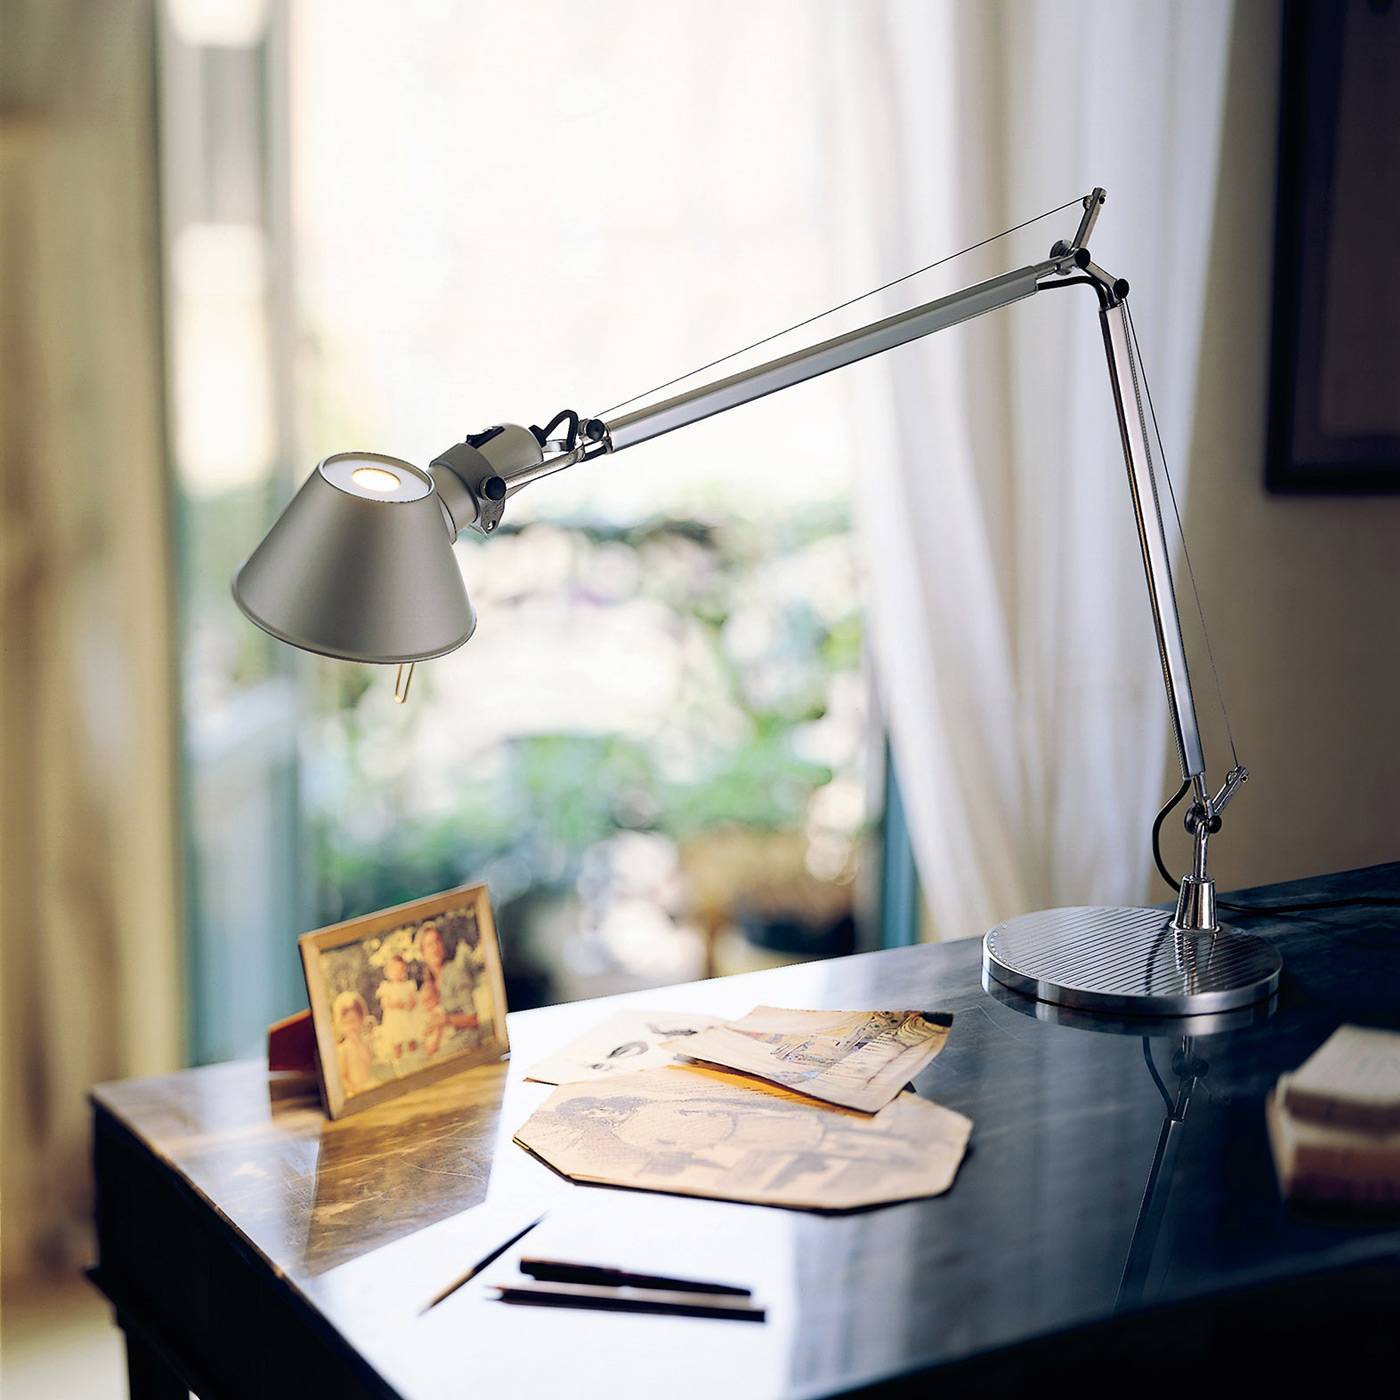 Настольная лампа своими руками - 85 фото вариантов и примеров изготовления настольной лампы